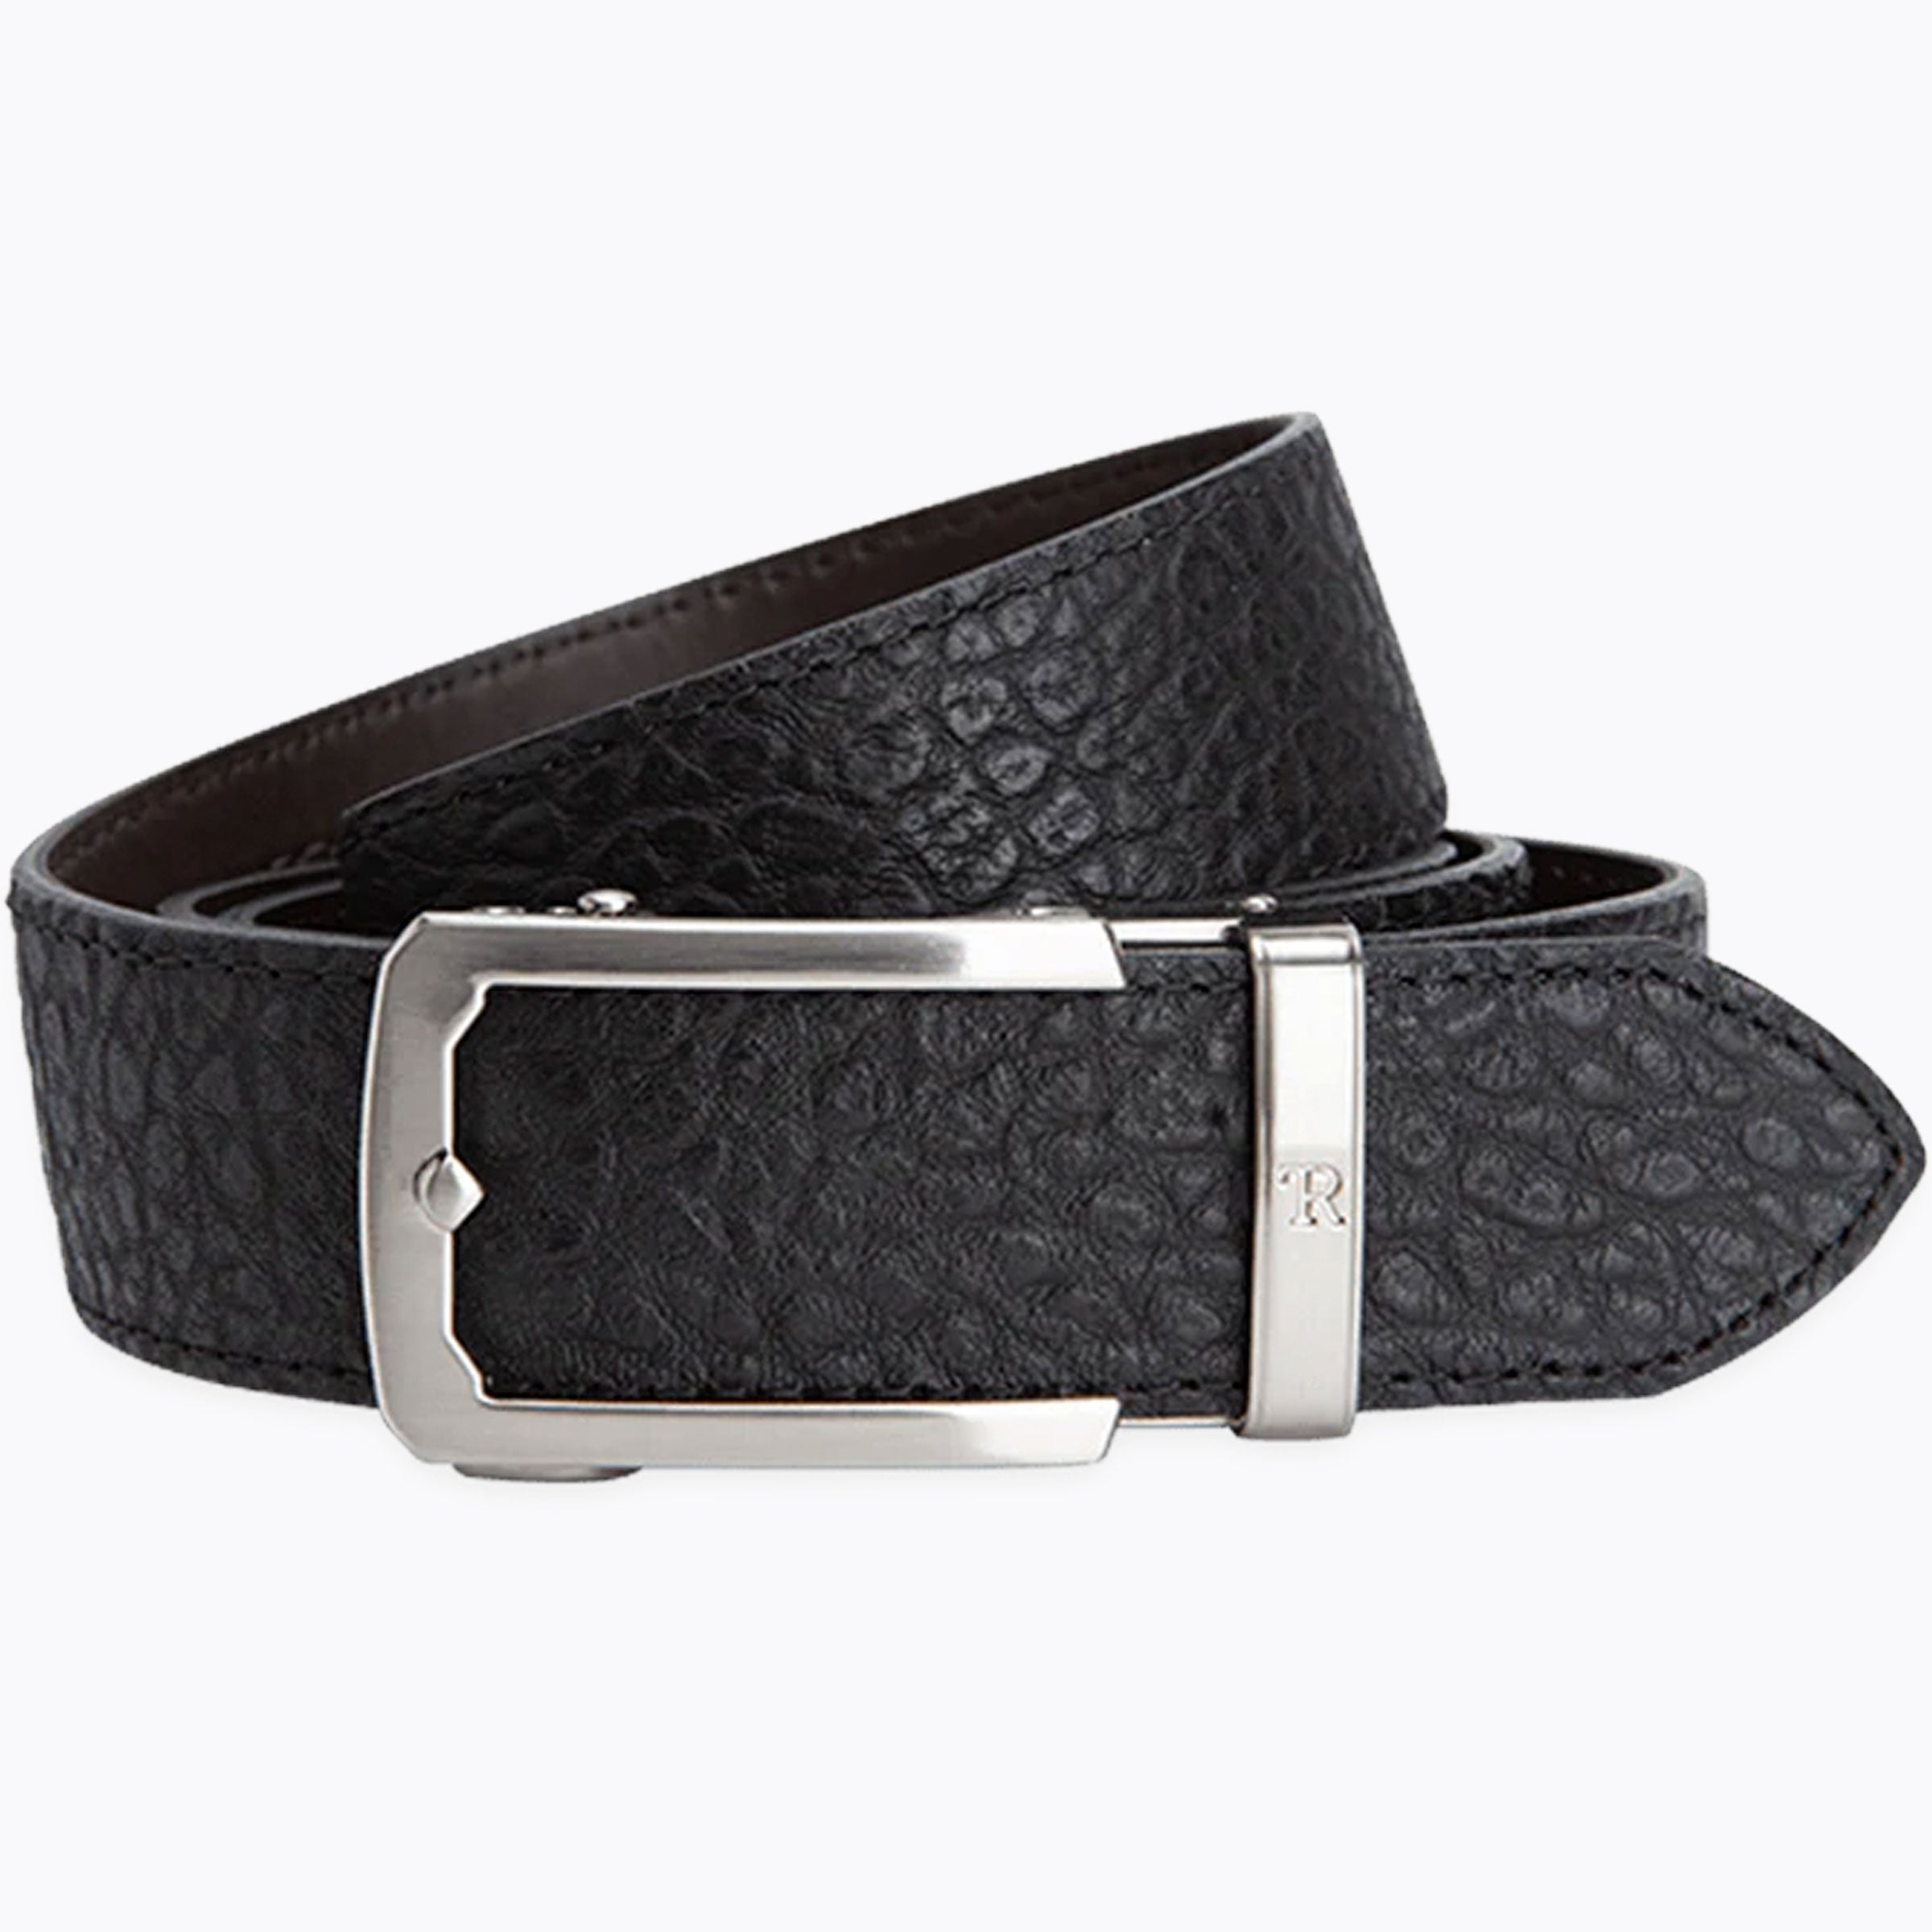 Bison Black, 38mm Strap, Luxury Belt